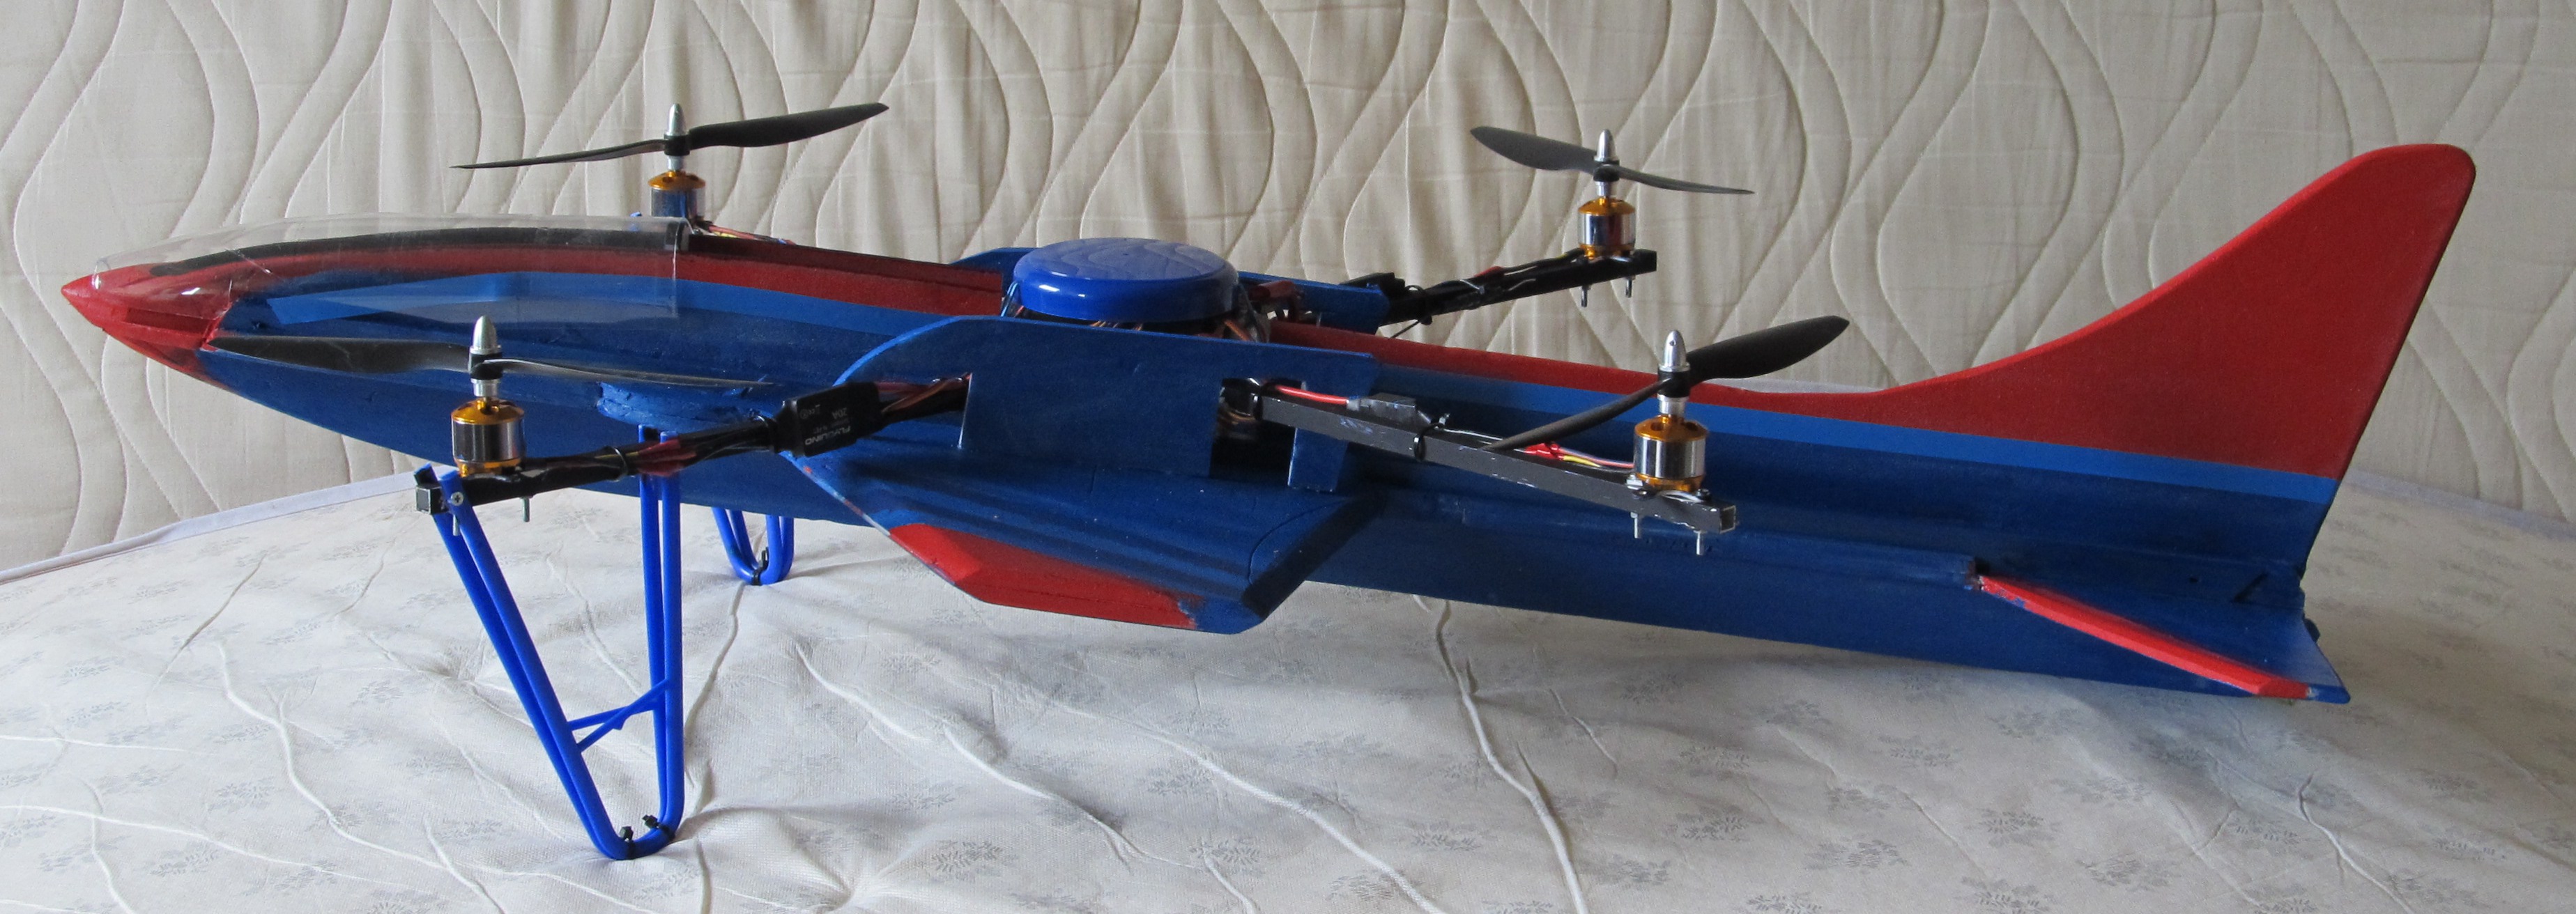 Jetcopter 001.JPG